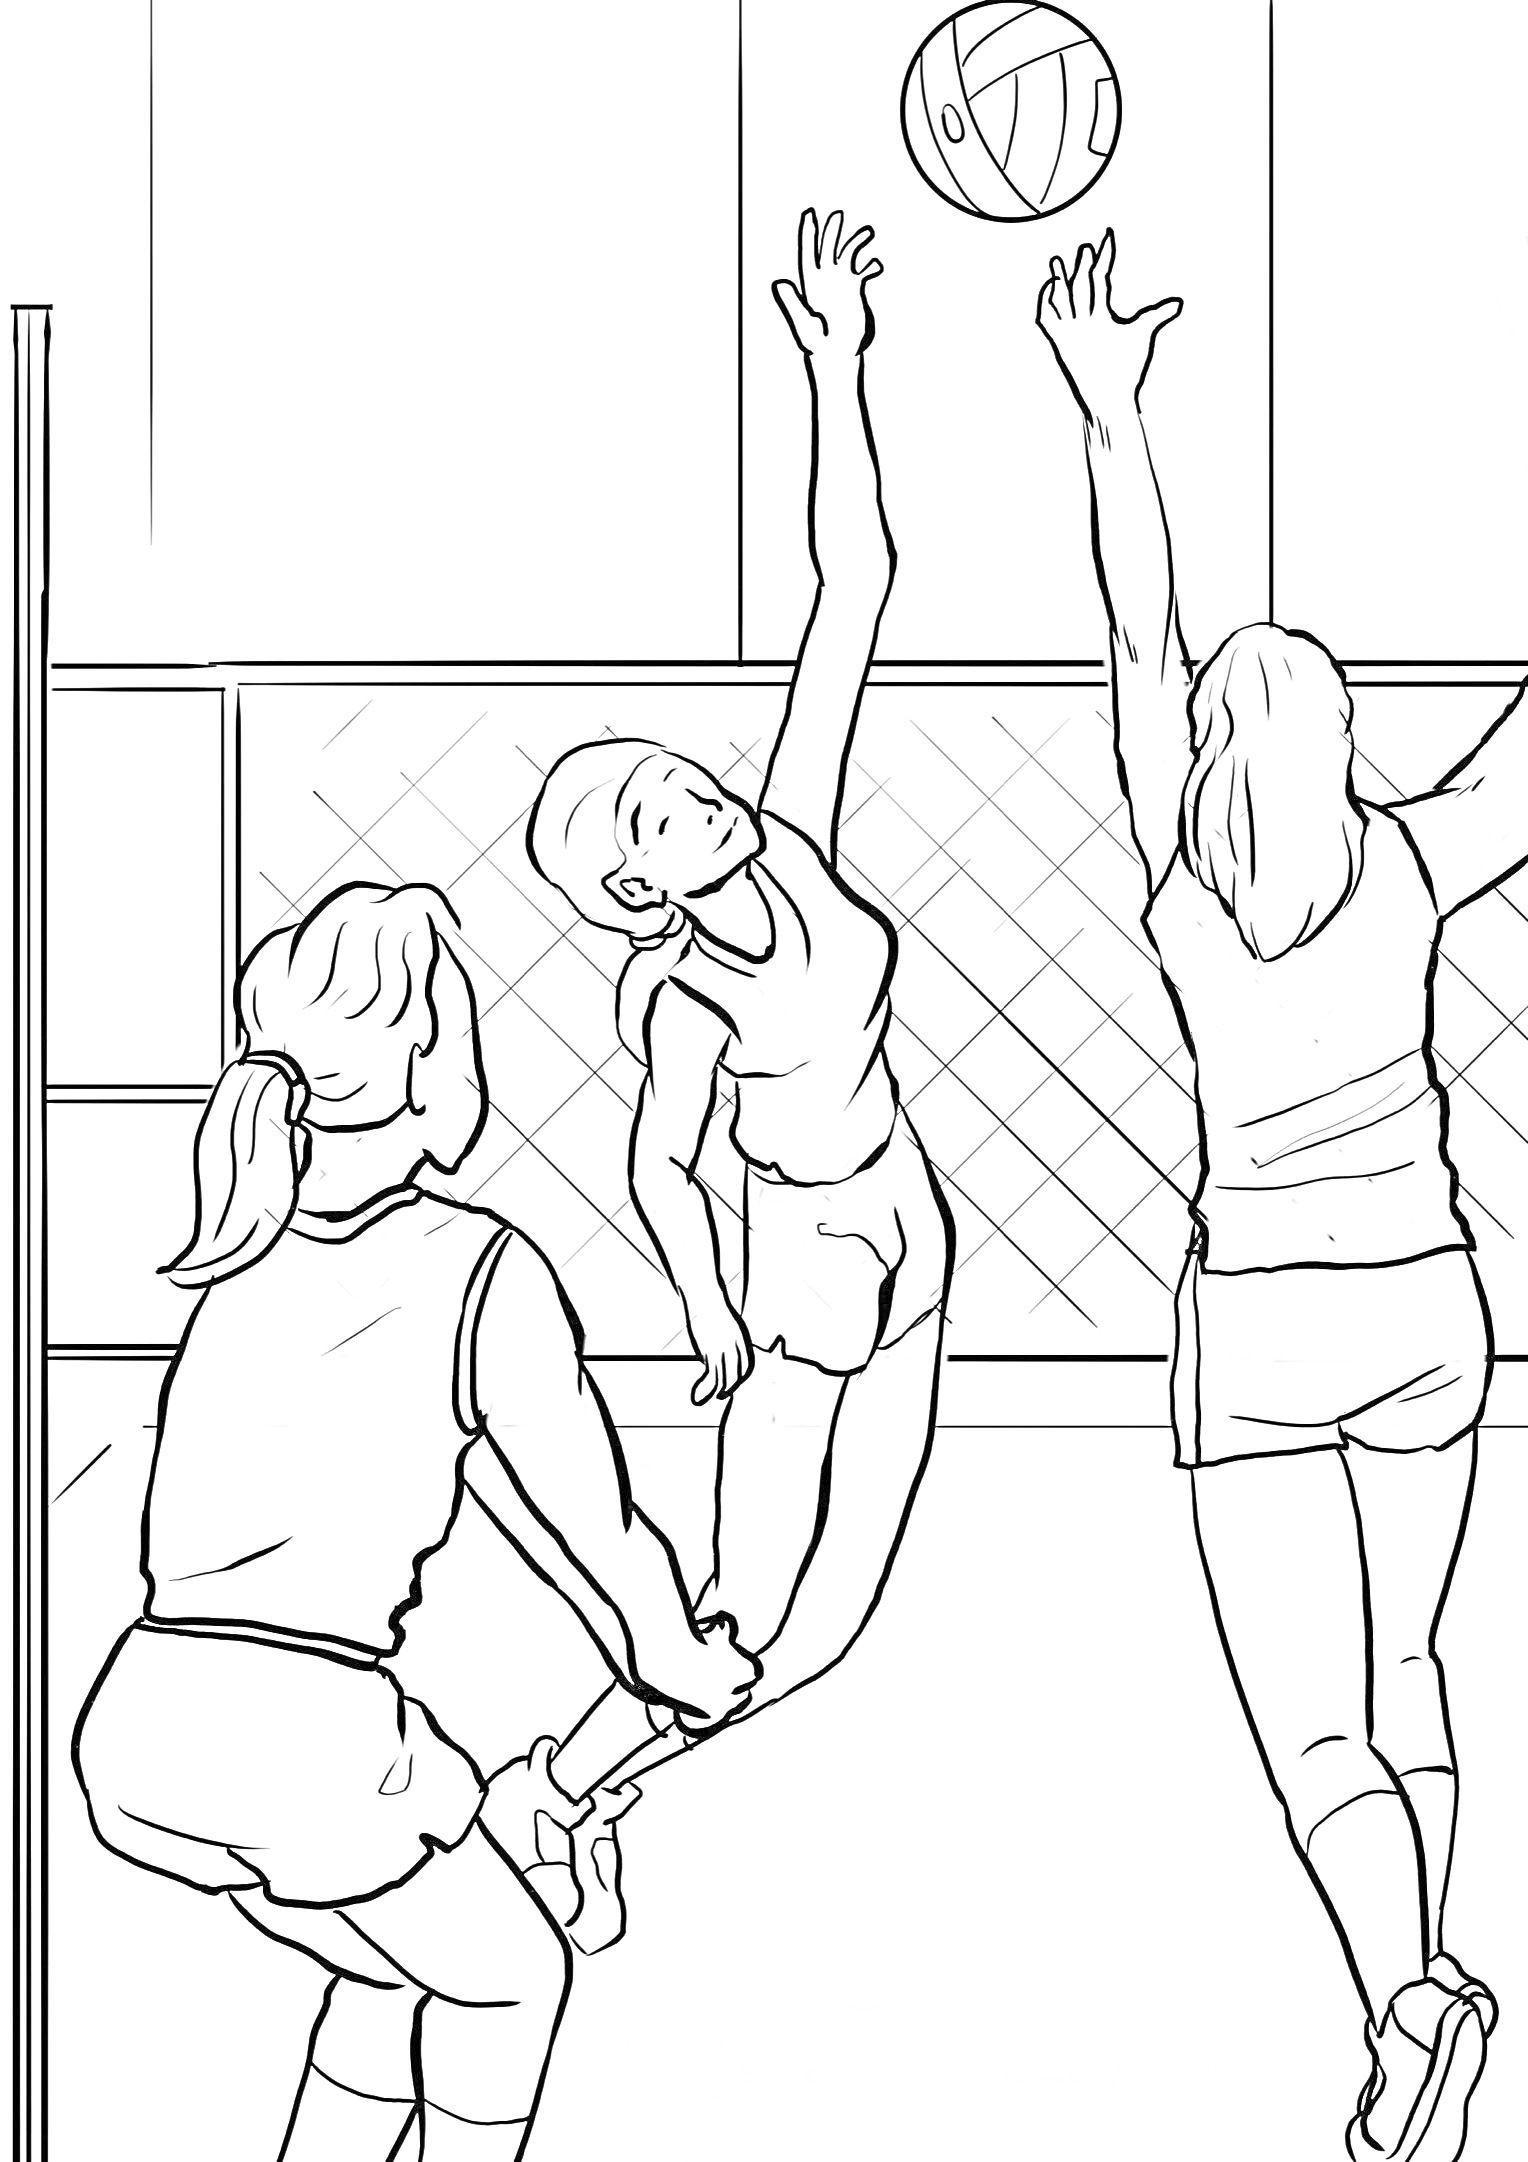 Раскраска Три девушки играют в волейбол у сетки